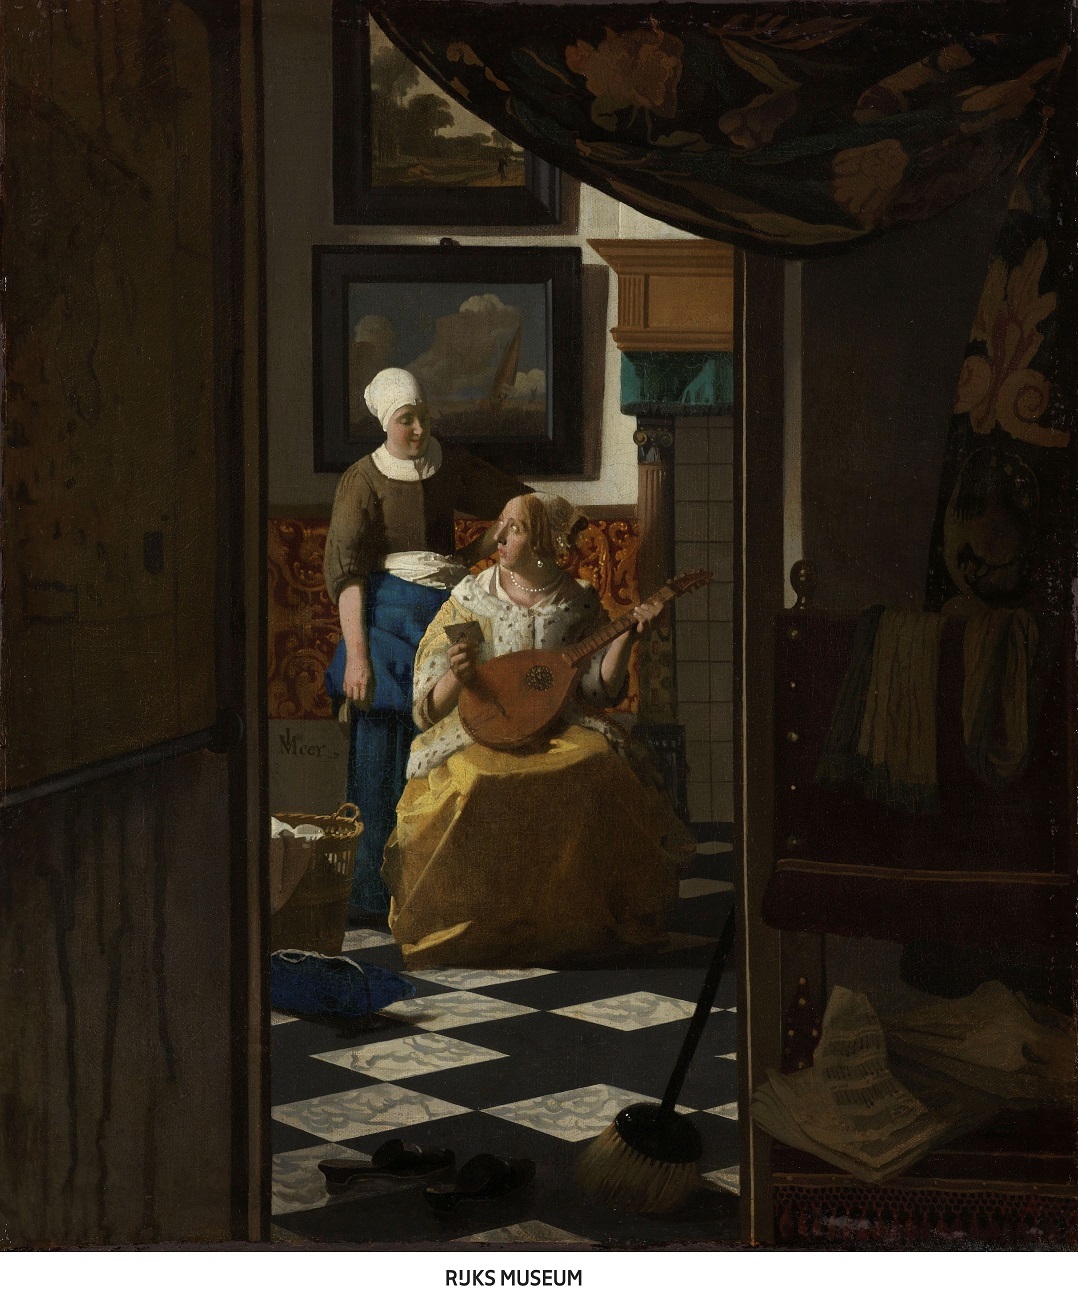 ヨハネス・フェルメール 《恋文》 1669-1670年頃    油彩・カンヴァス 44×38.5cm アムステルダム国立美術館 